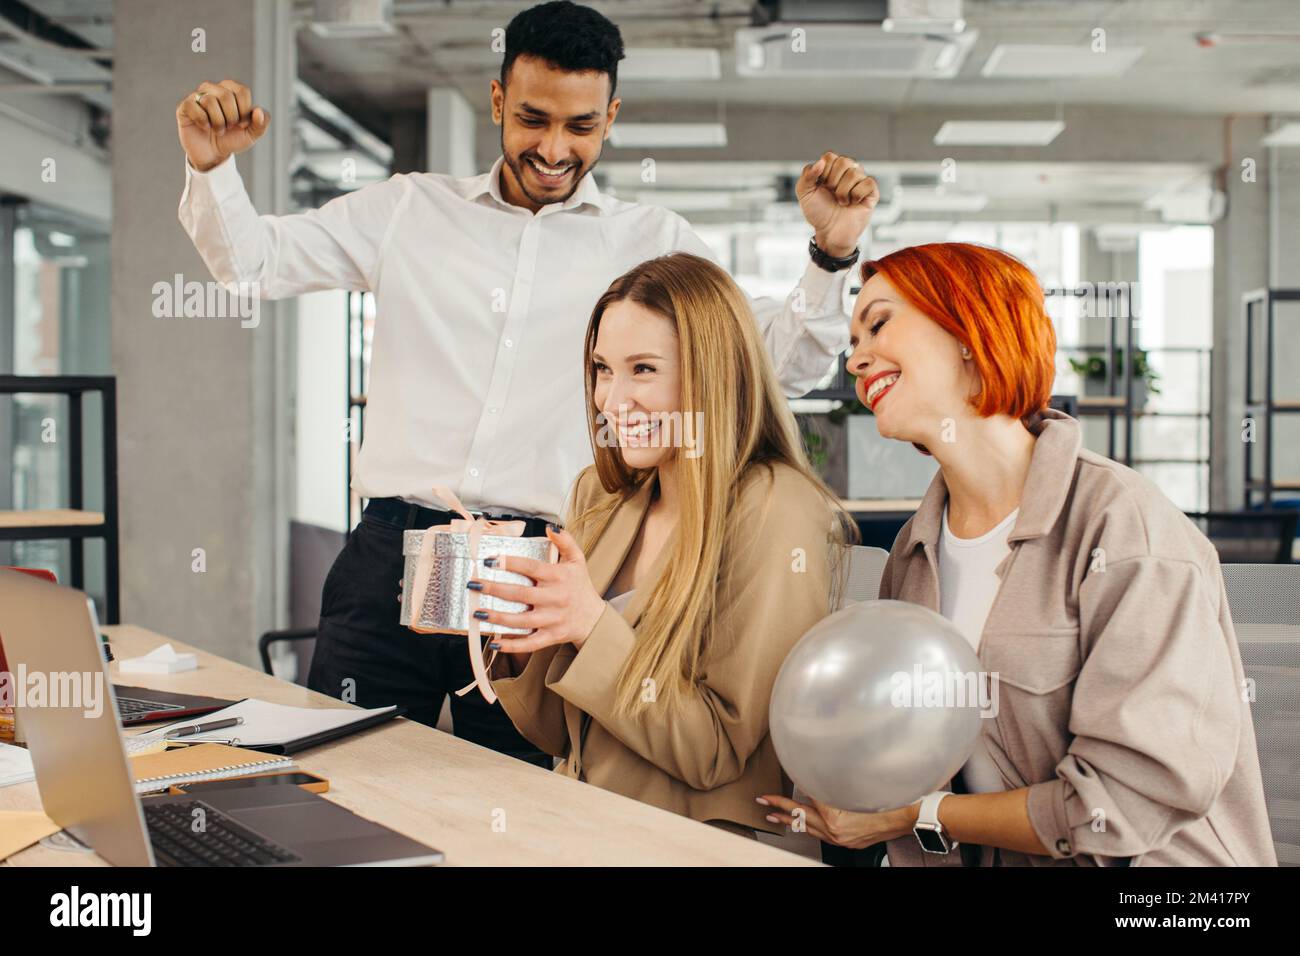 Das Business-Team feiert den Geburtstag eines Kollegen mit einem Kuchen im Büro. Den Geburtstag eines Mitarbeiters am Arbeitsplatz feiern. Stockfoto